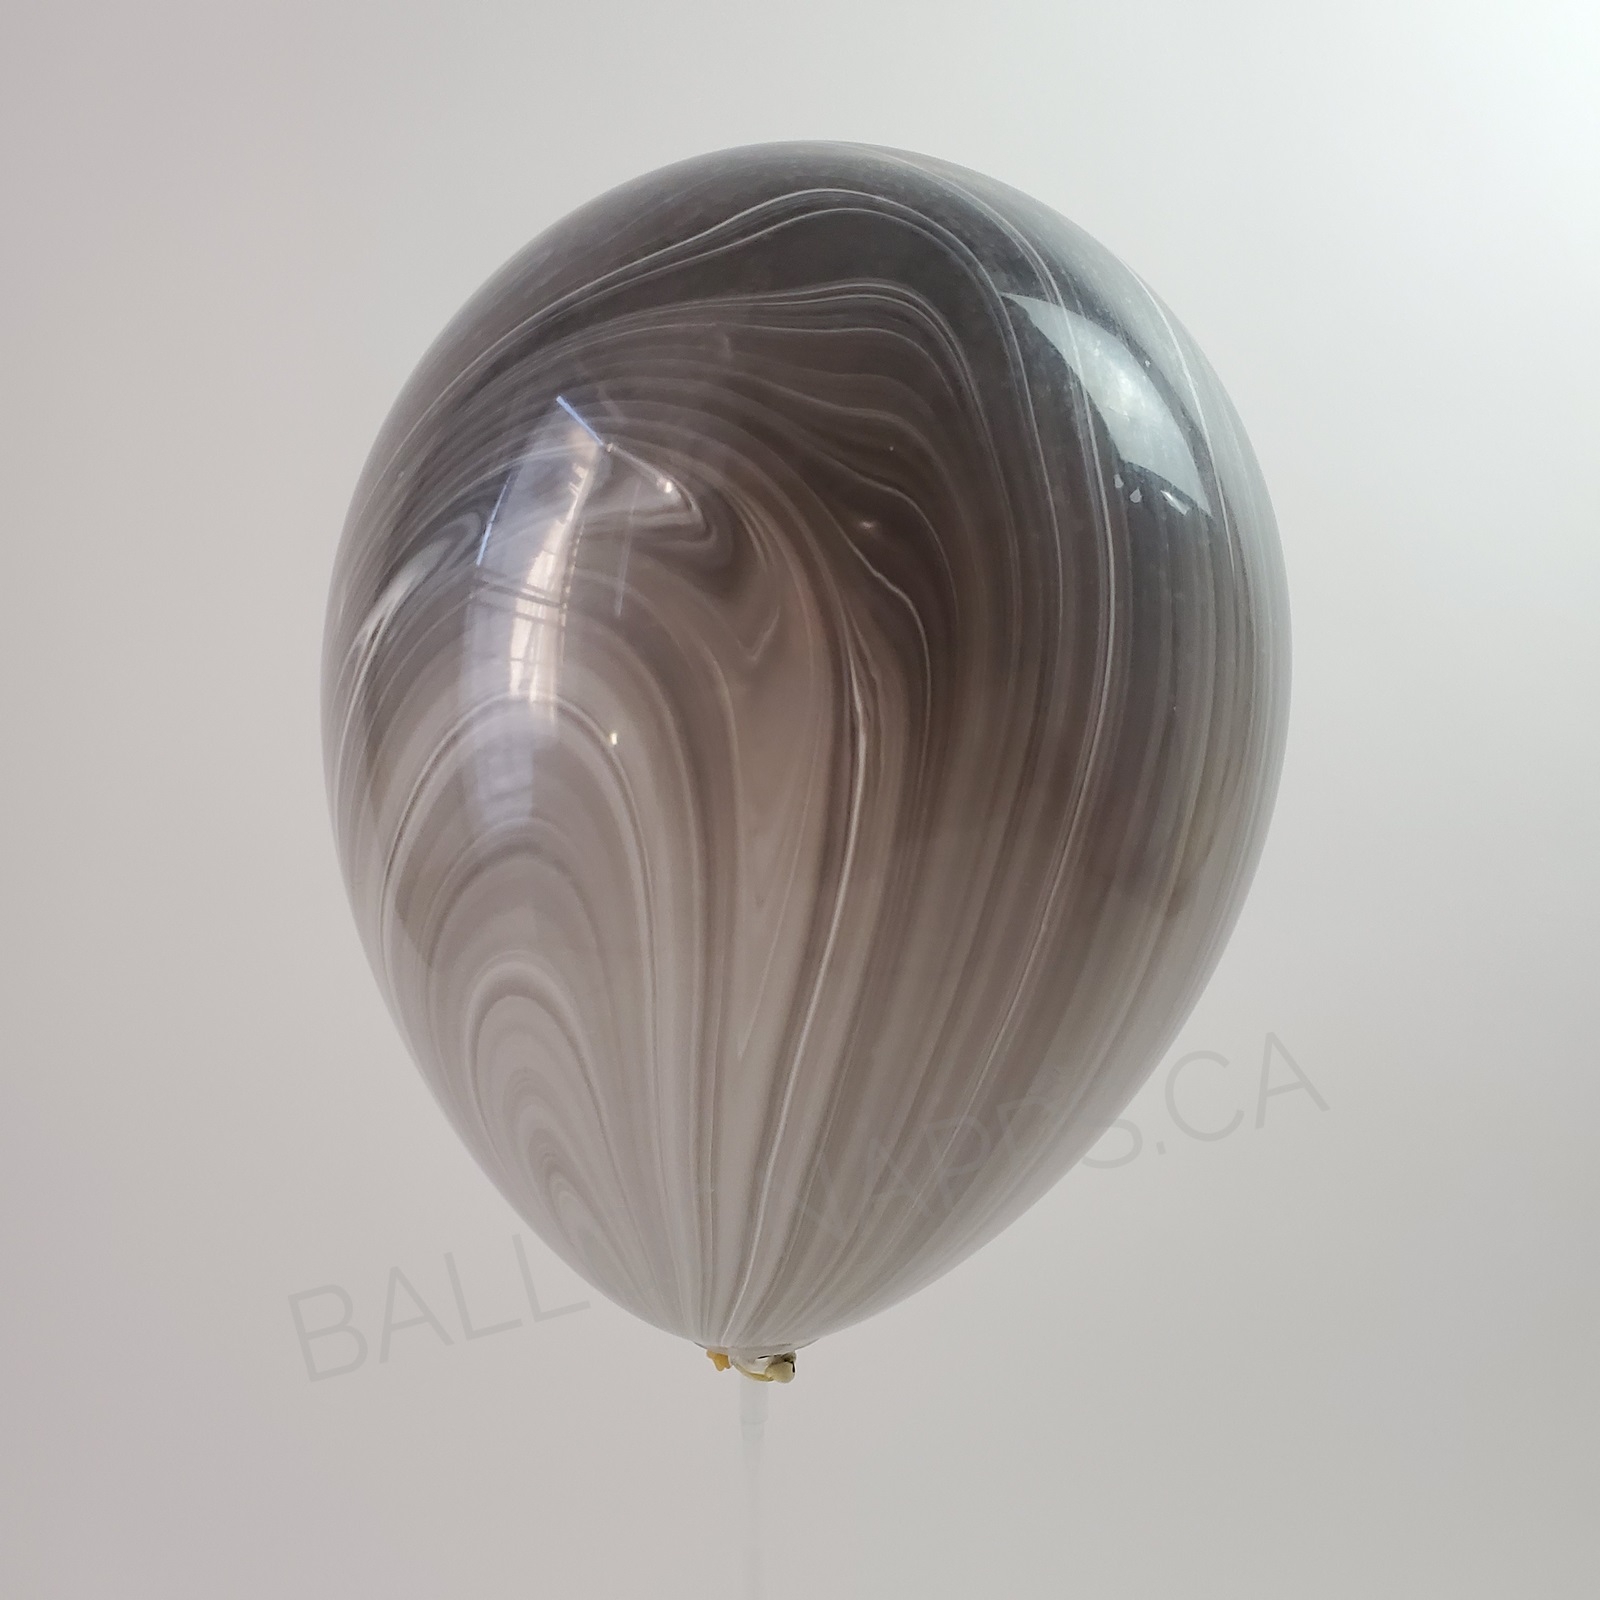 balloon texture (1) - 30